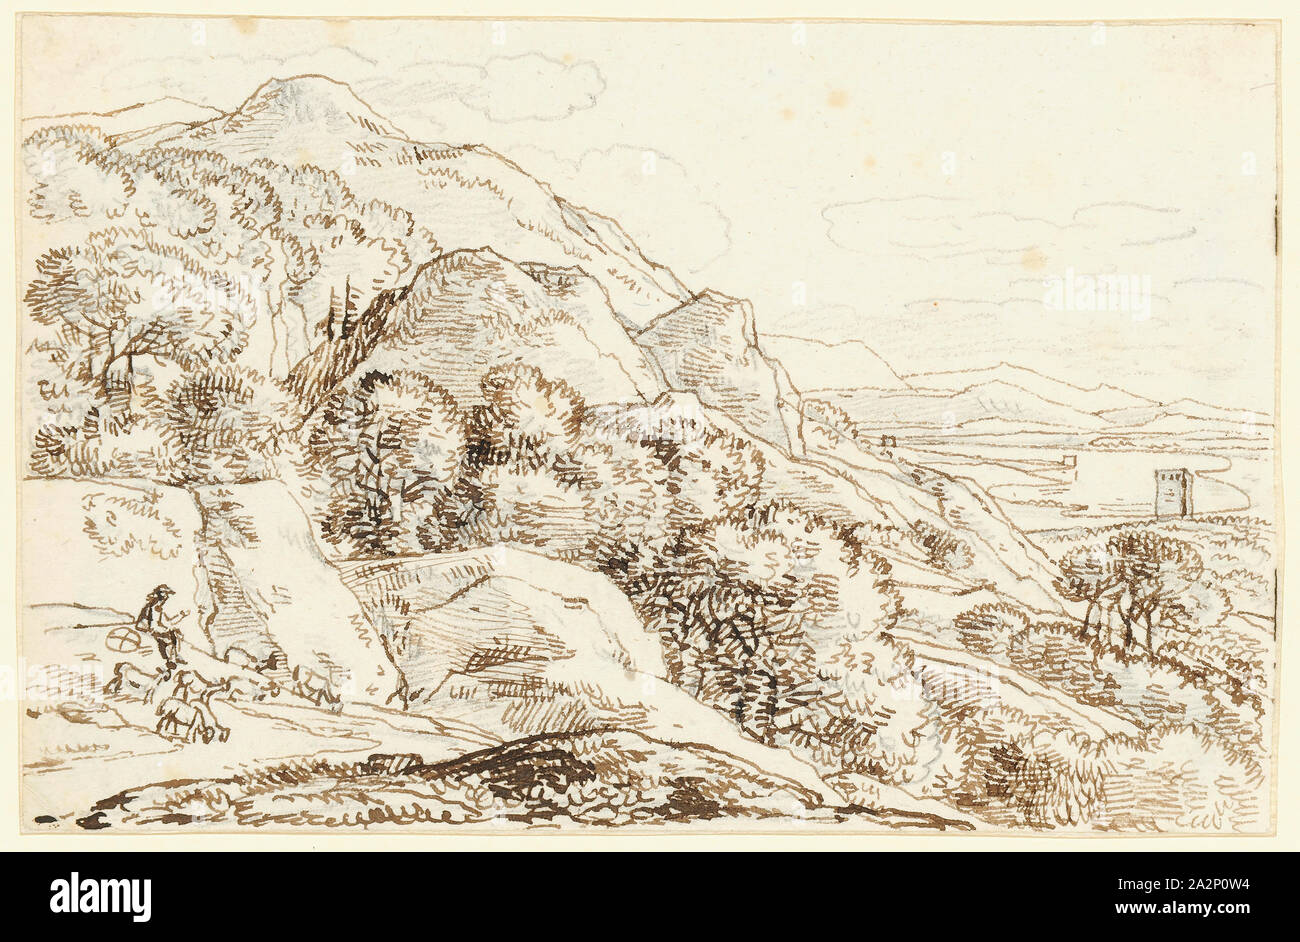 L'étude du paysage, un berger avec son troupeau à l'avant gauche, feather (SEPIA) sur crayon, feuilles : 11 x 17 cm, non signé, Franz Josef Innocenz, Mannheim 1749 Ange-München 1822 Banque D'Images